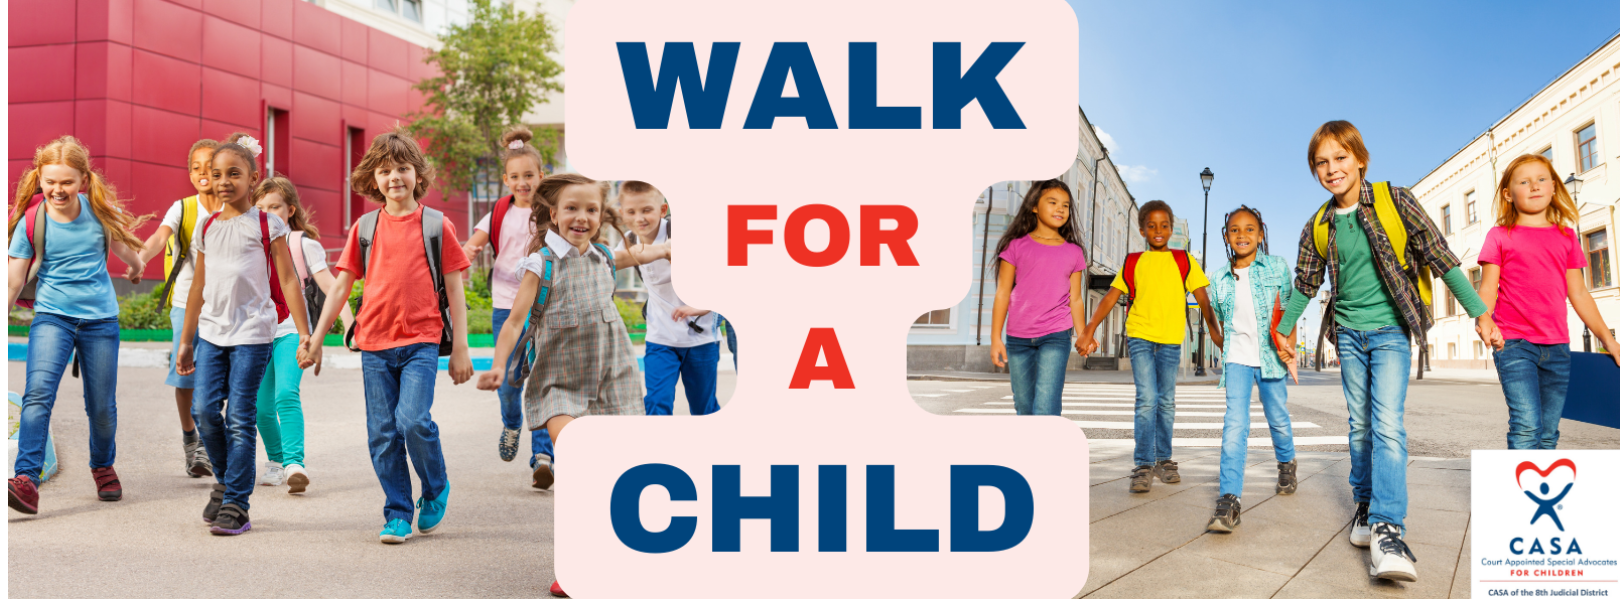 Casa Walk for A Child